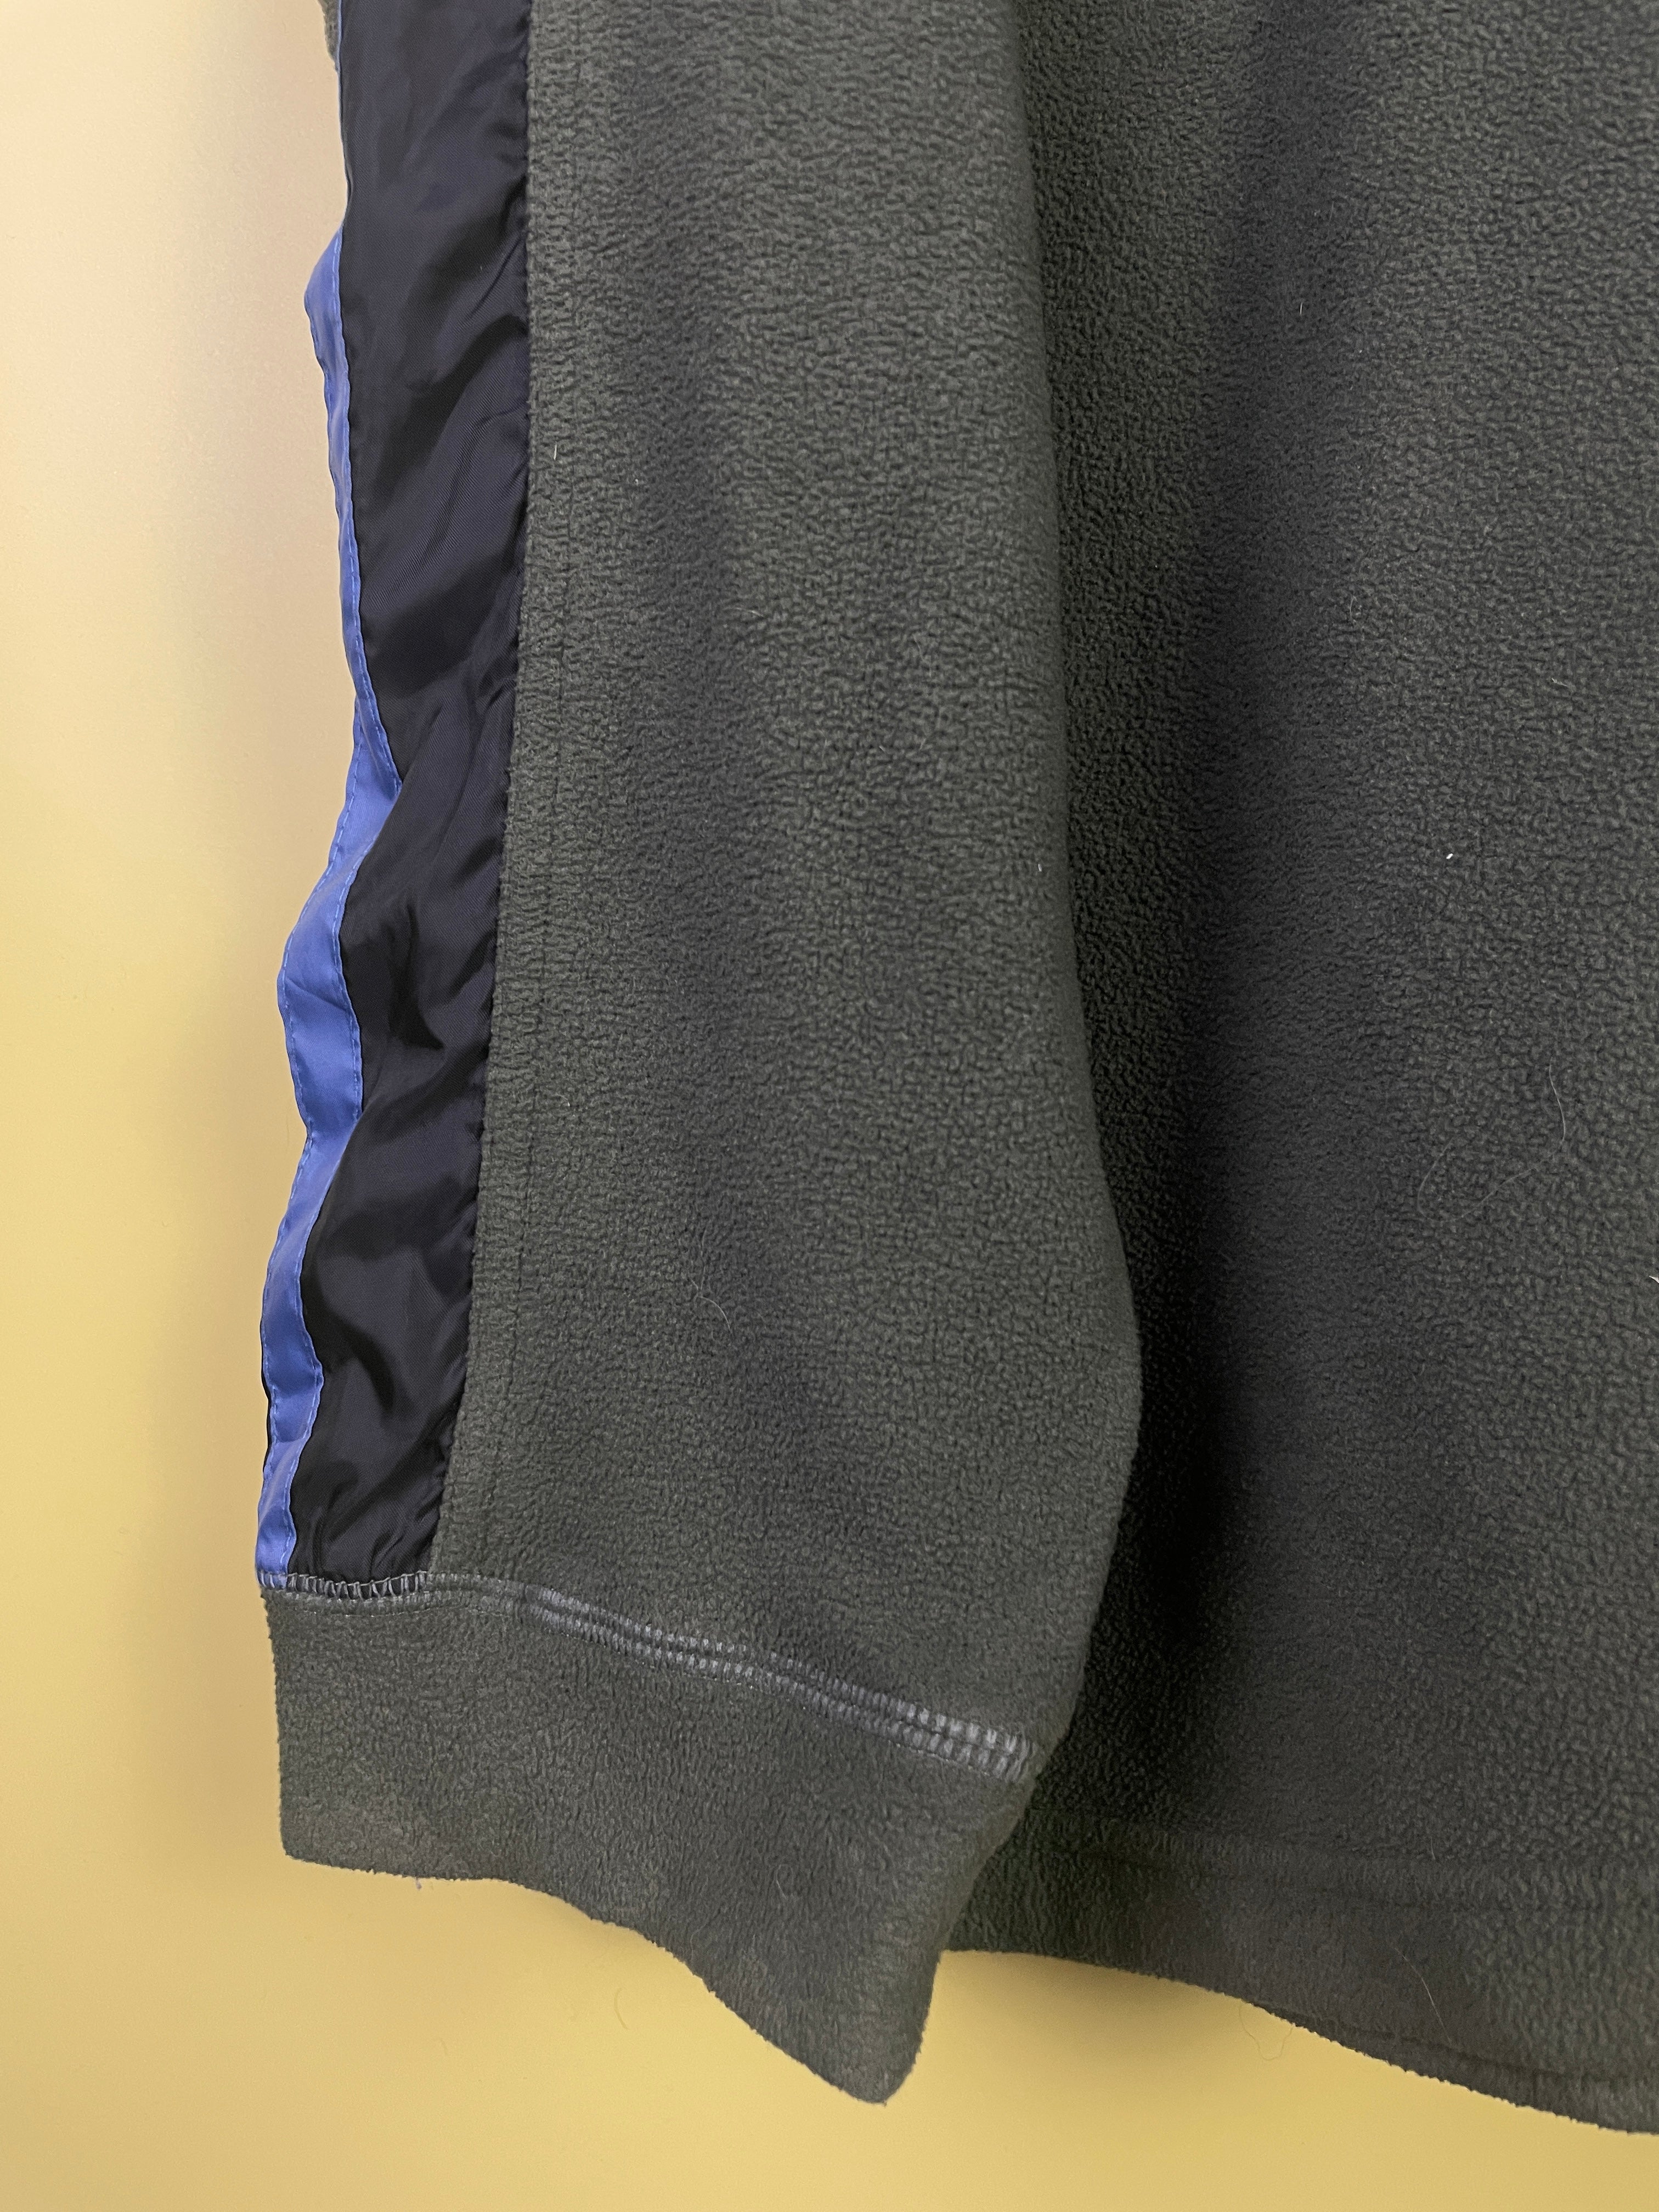 XL Fleece Nike Sweater dunkelgrün